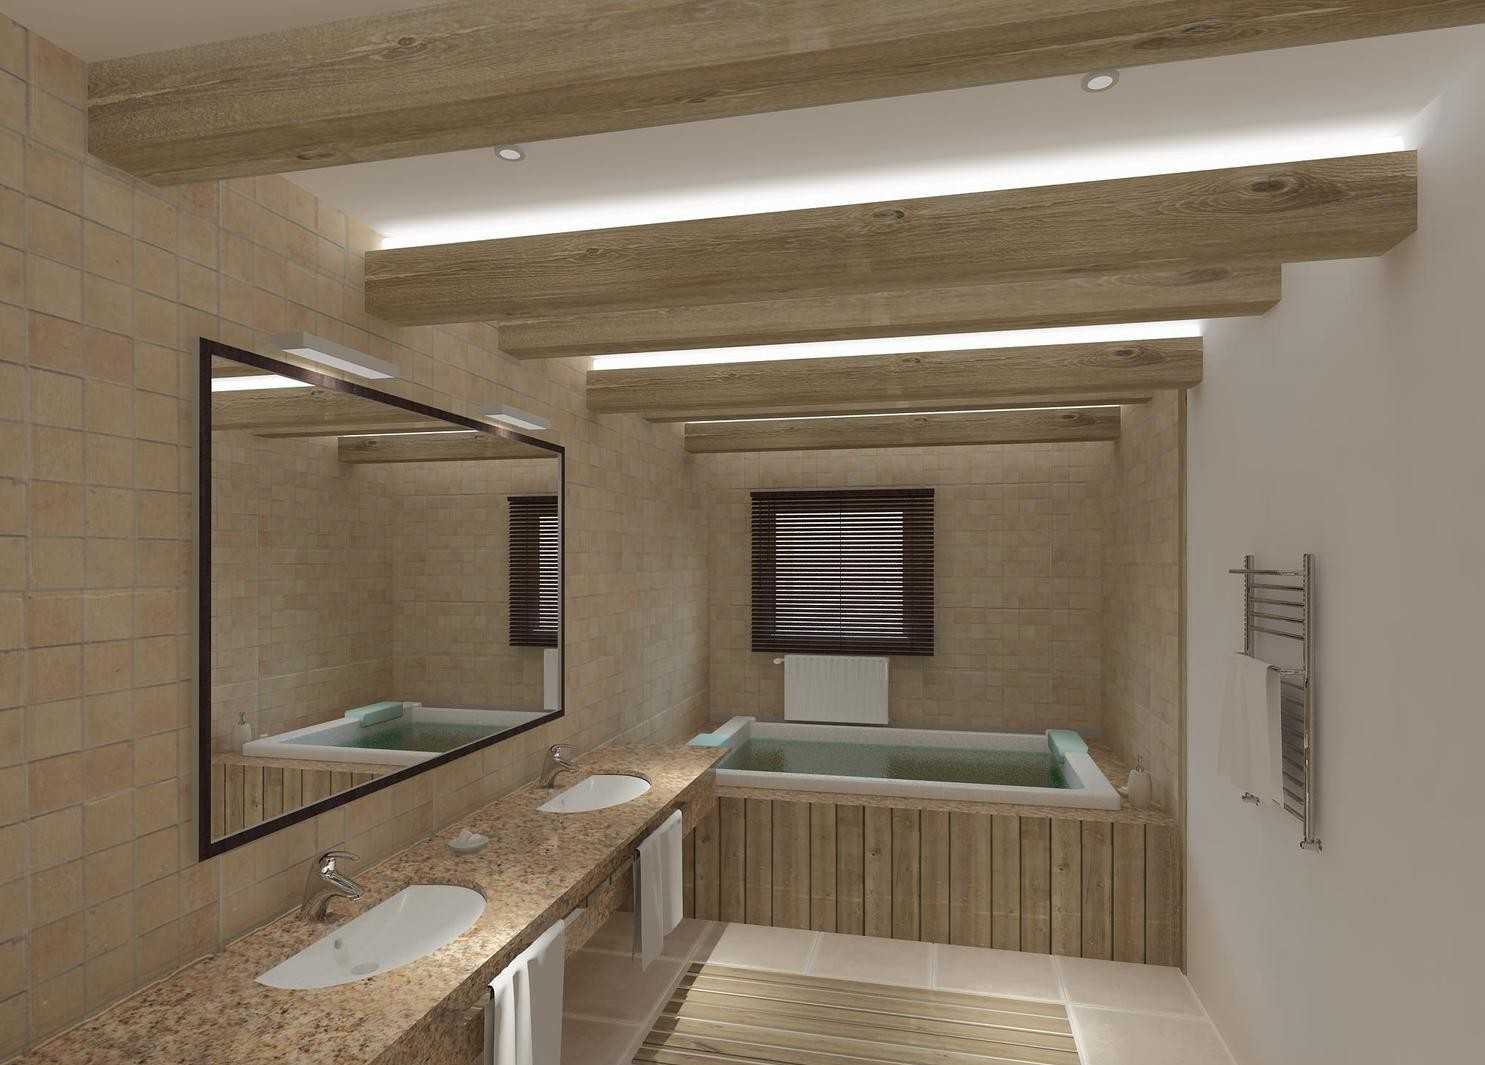 Преимущества выбора дизайна ванной комнаты в светлых тонах